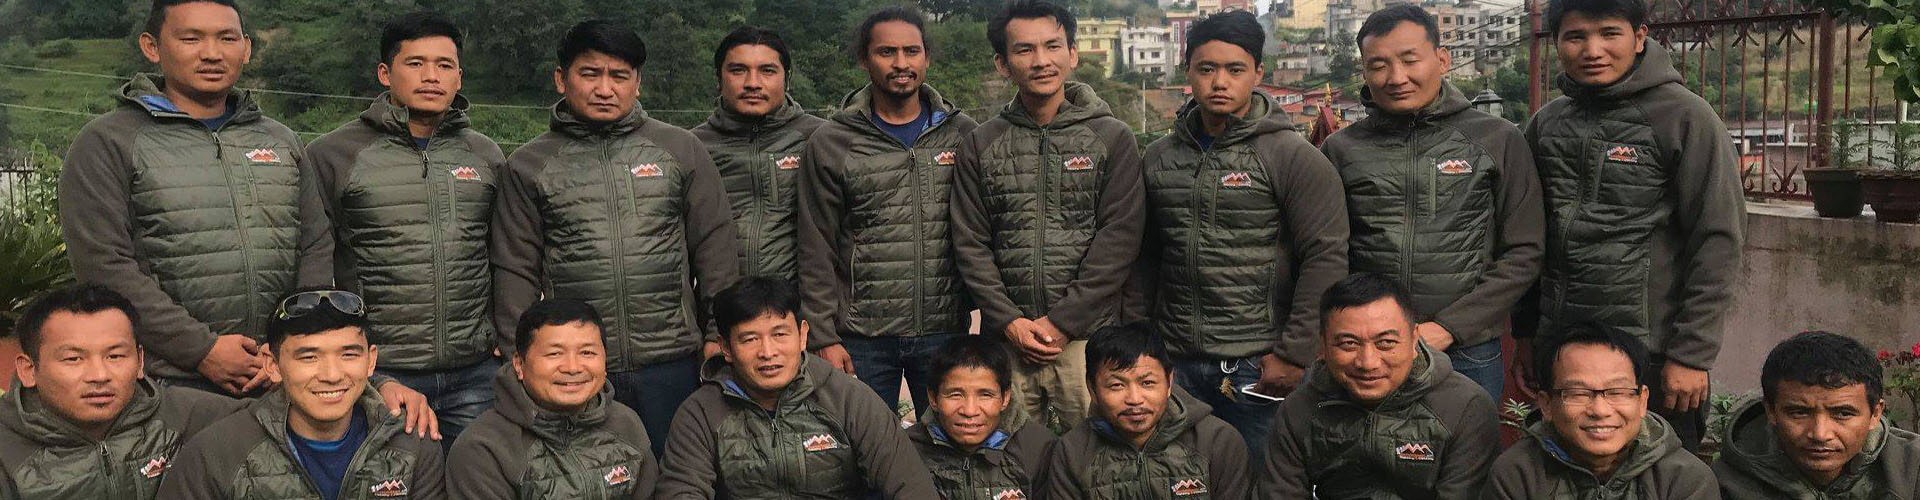 Nepal trekking team